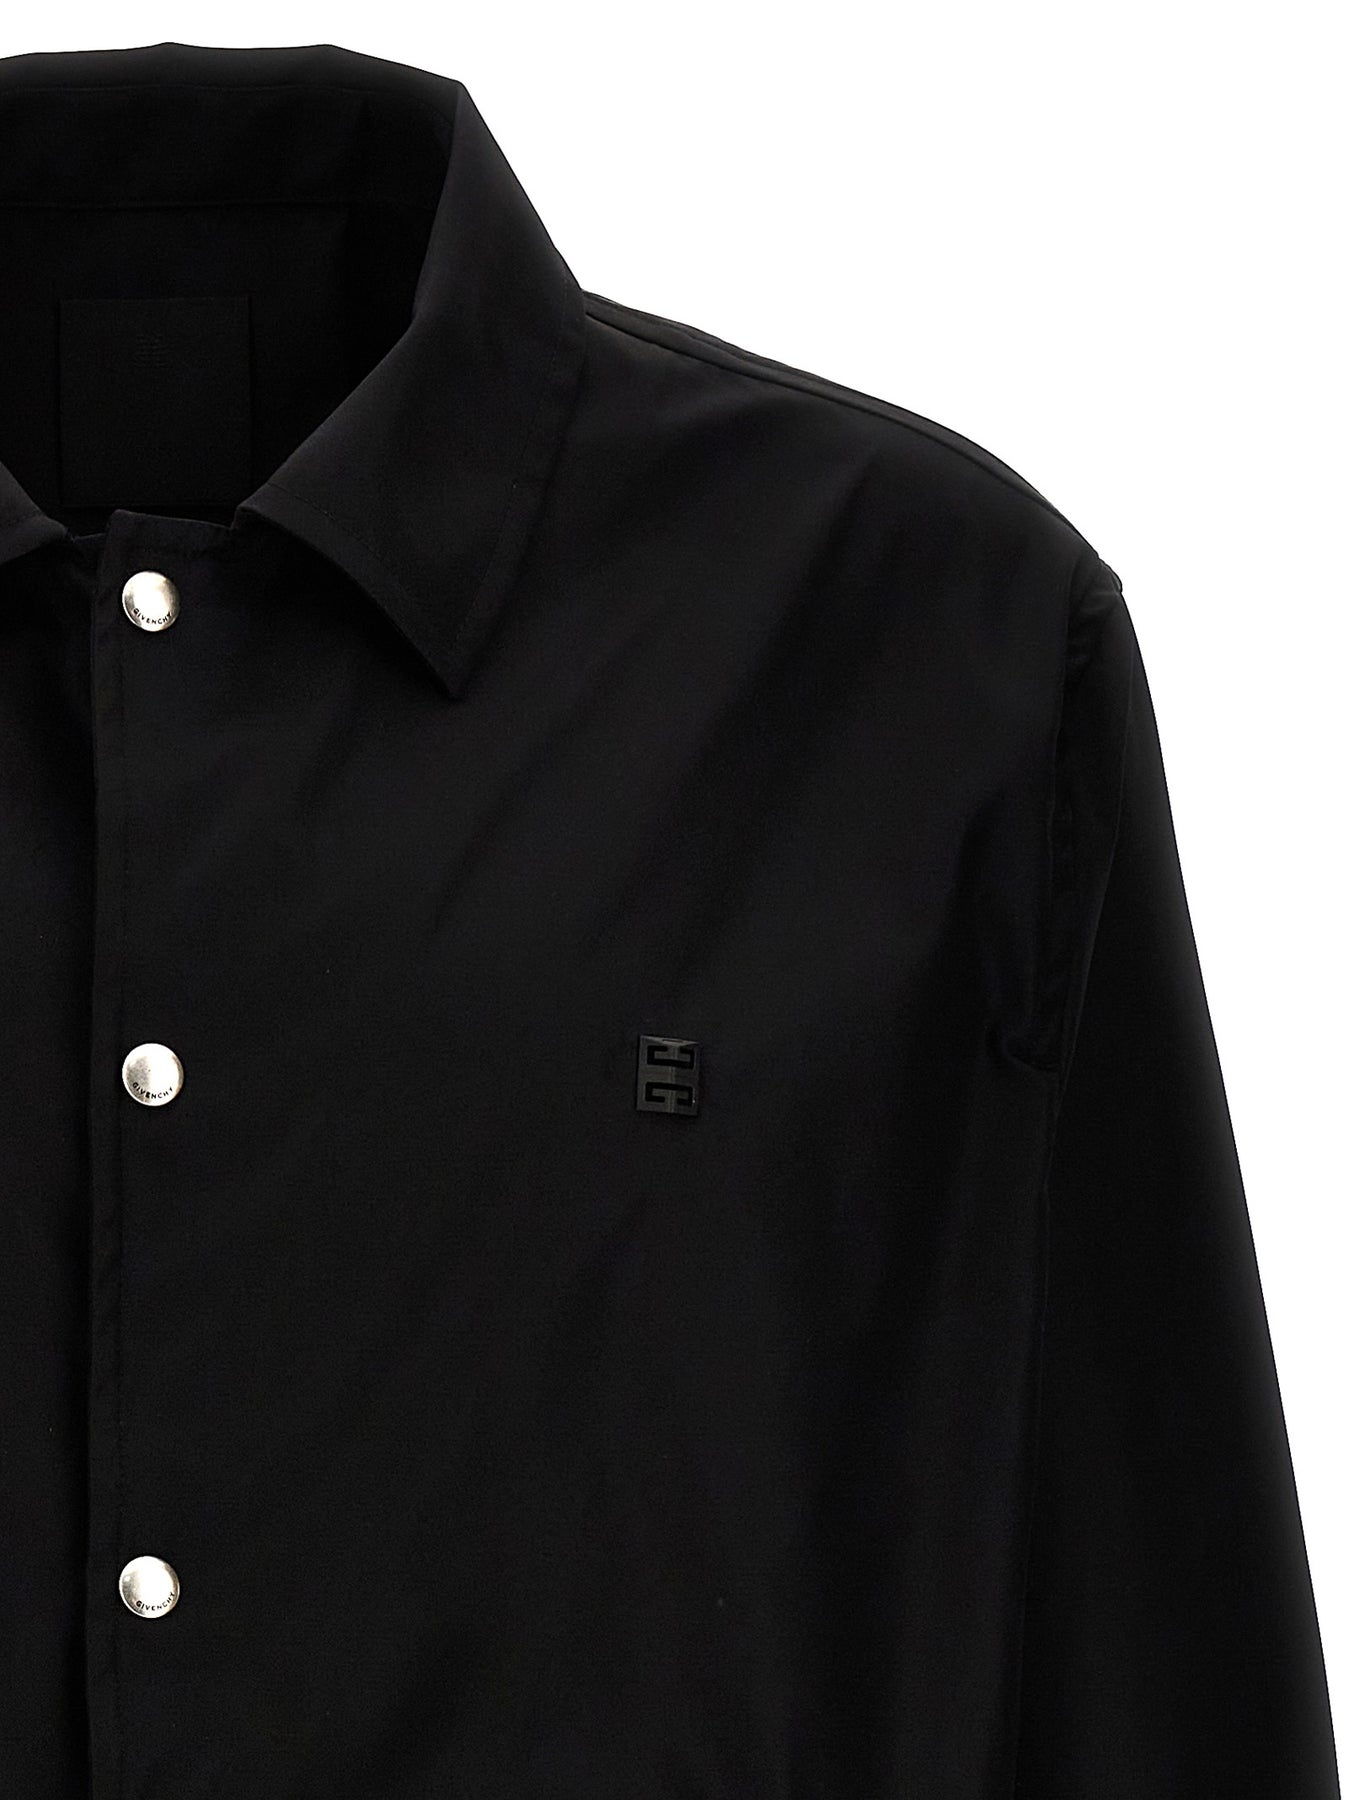 Tech Fabric Jacket Casual Jackets, Parka Black - 3